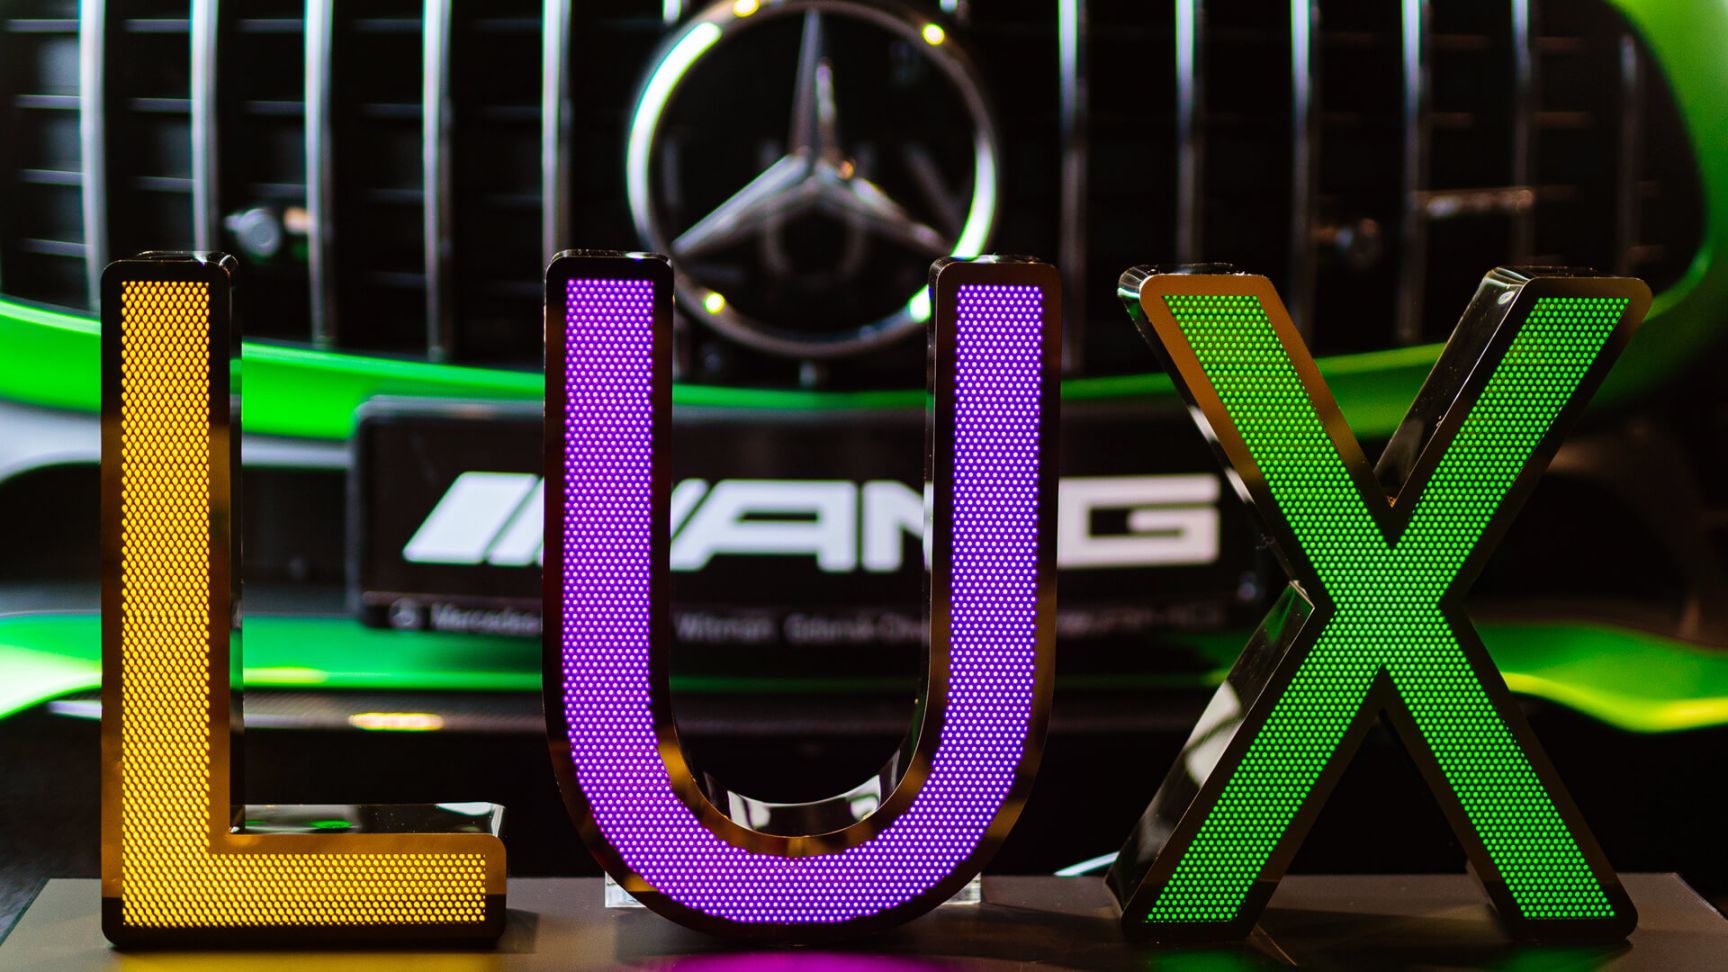 LUX litery z blachy nierdzewnej perforowanej - Napis LUX z blachy nierdzewnej perforowanej, podświetlanej LED w trzech kolorach, na tle Mercedesa